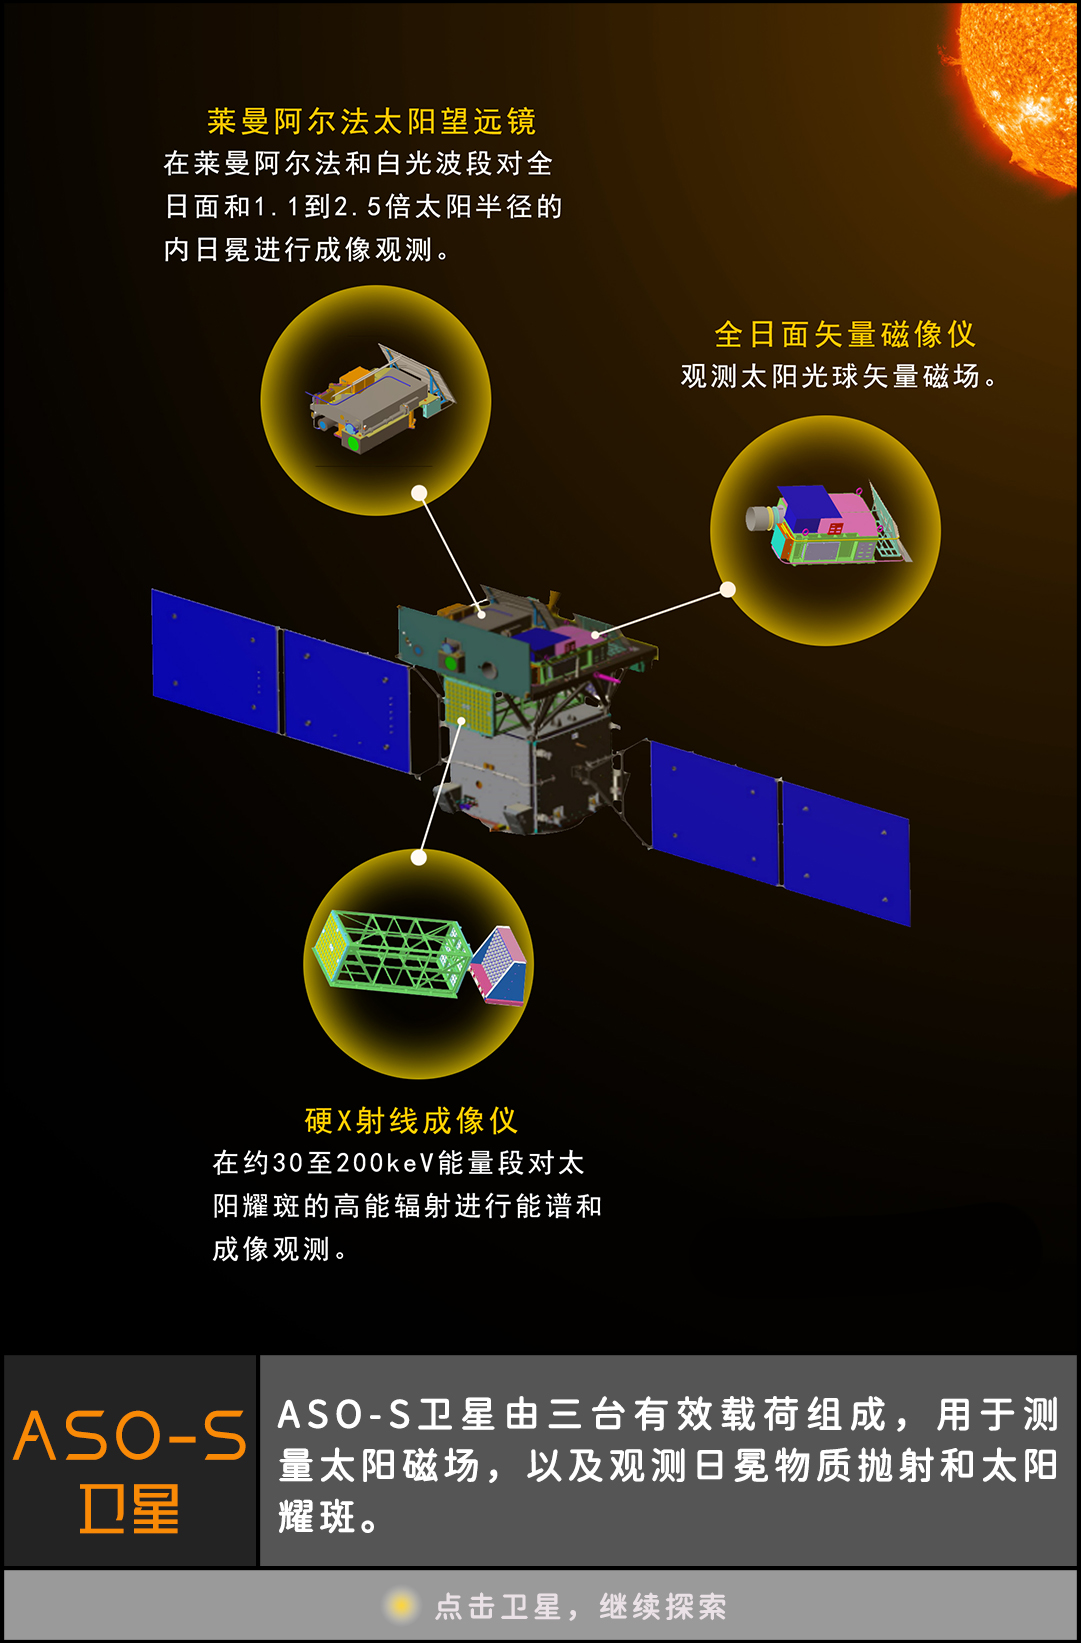 看太阳去！我国成功发射综合性太阳探测卫星 “夸父一号”：科普中国